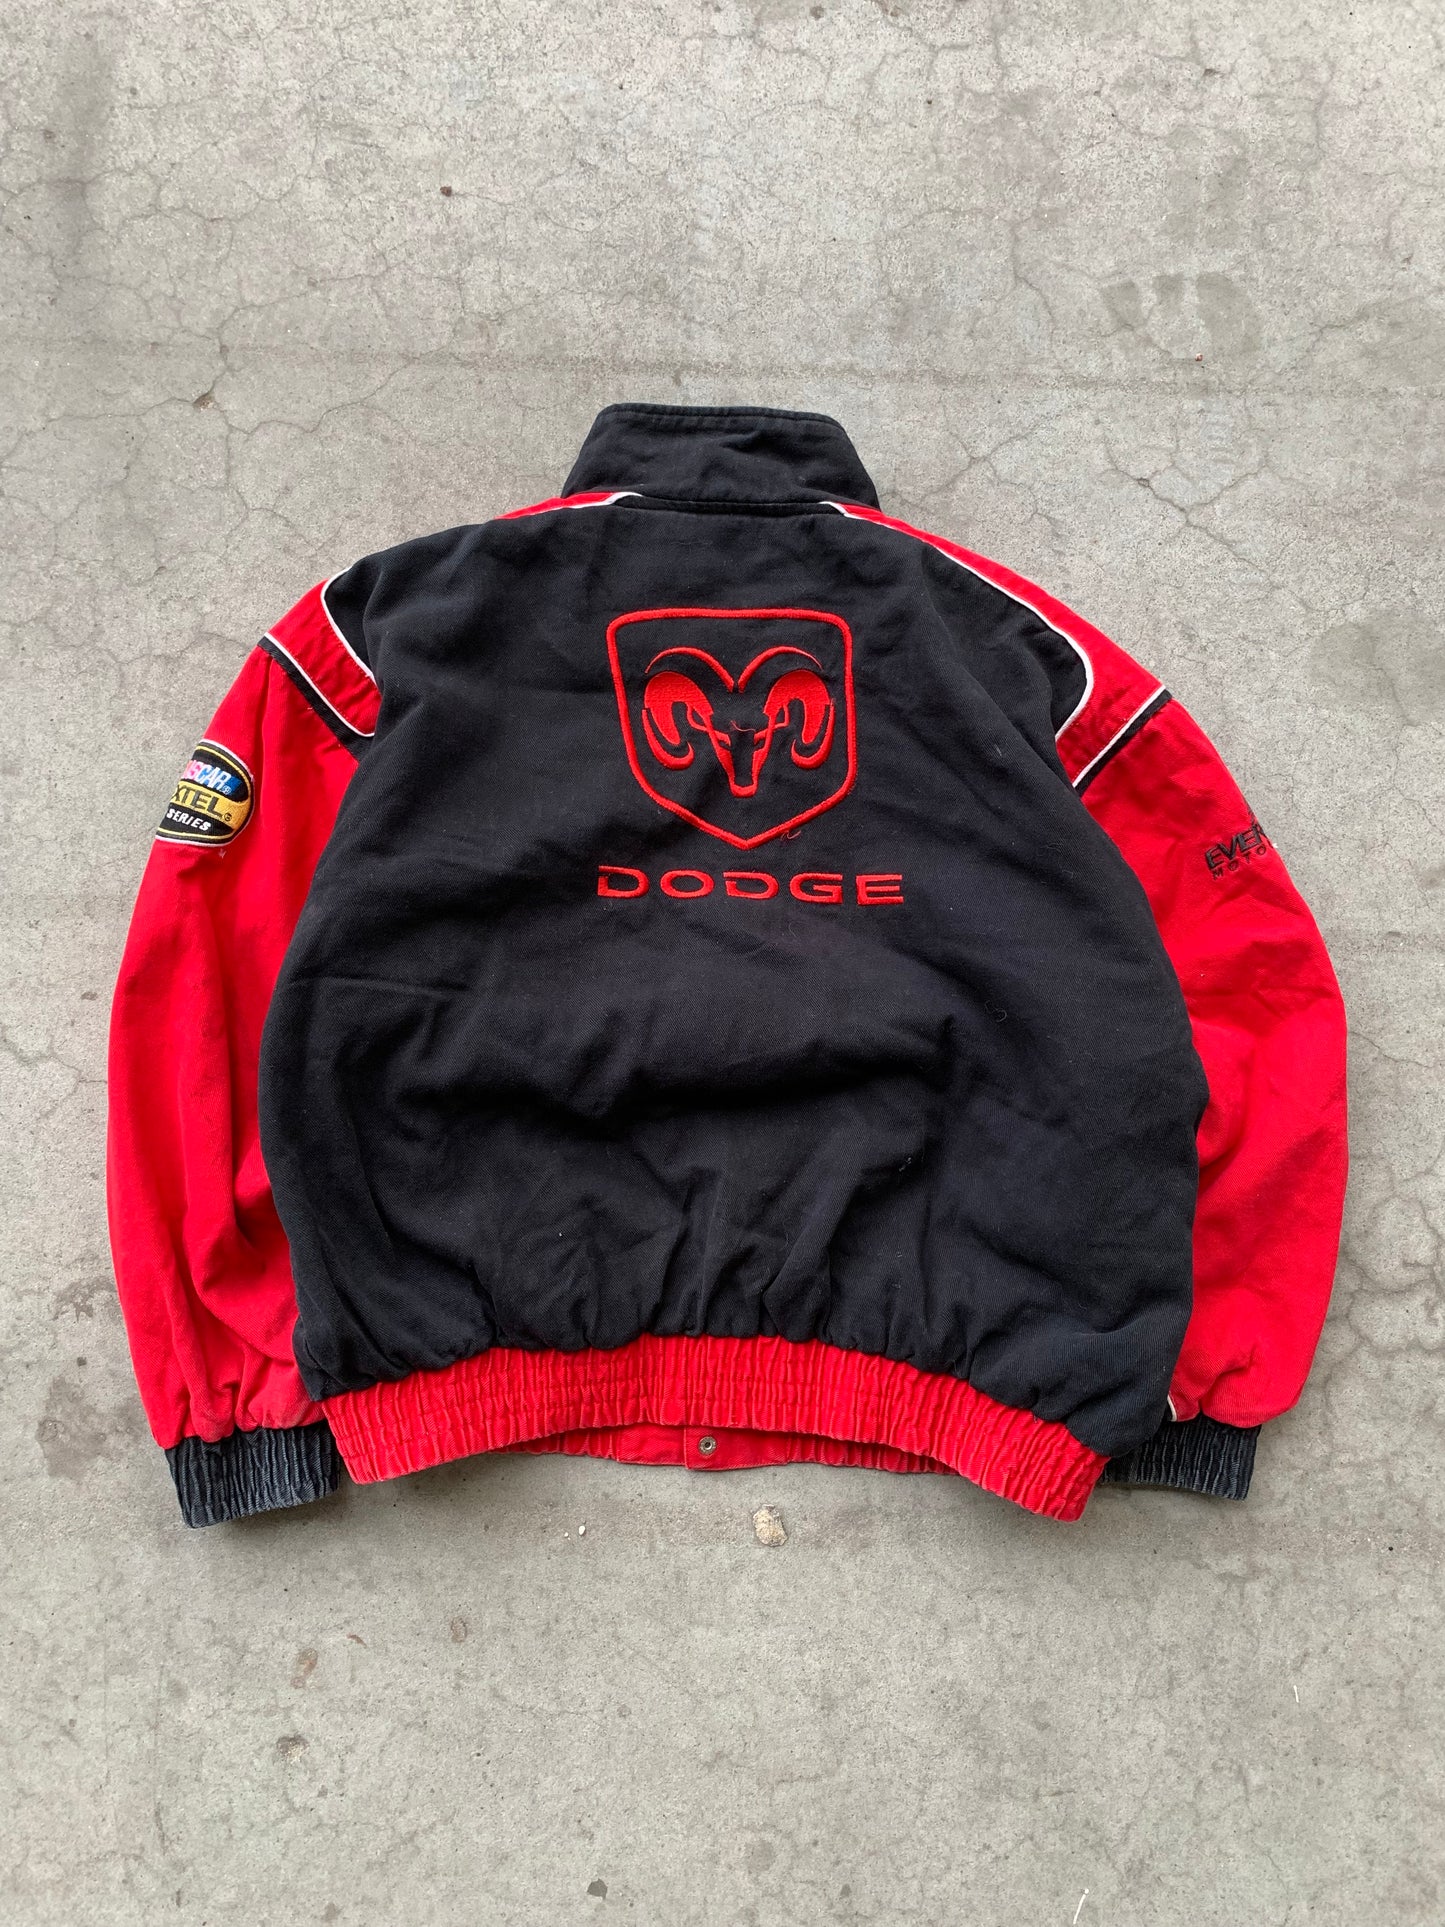 (M) Dodge Racing Jacket